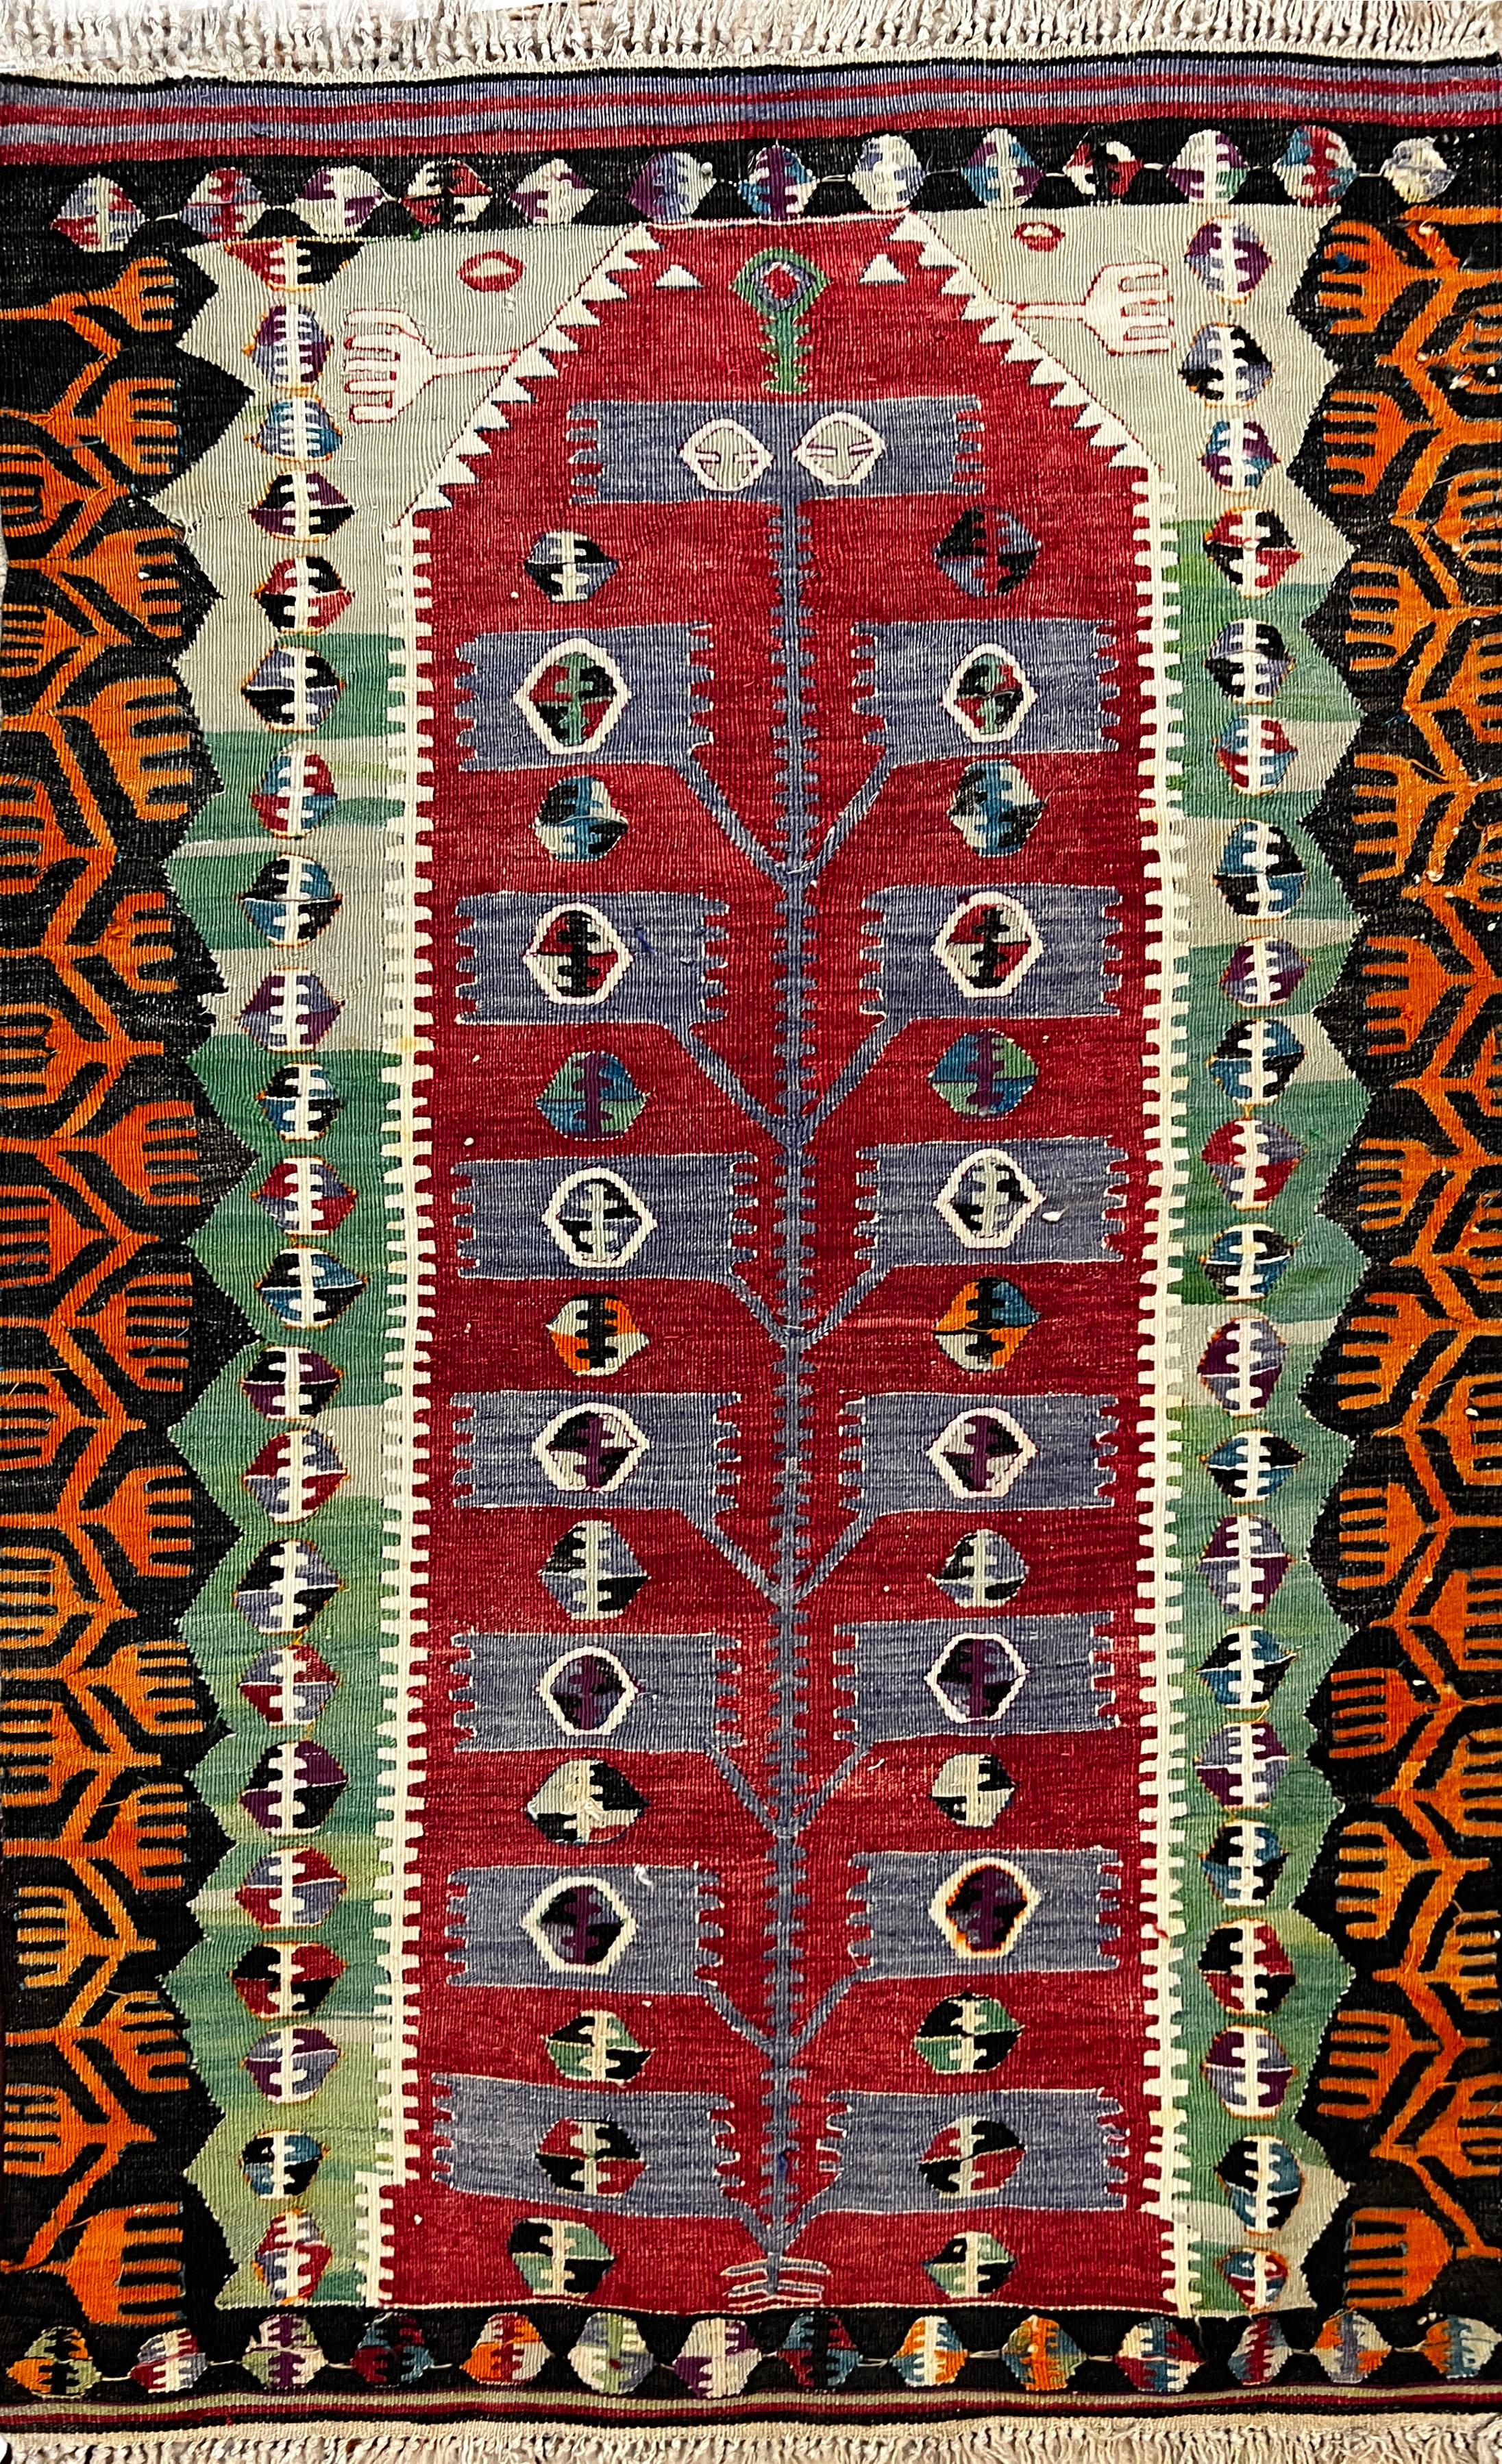 202 - 20th Century Turkish Kilim Carpet 'kars' For Sale